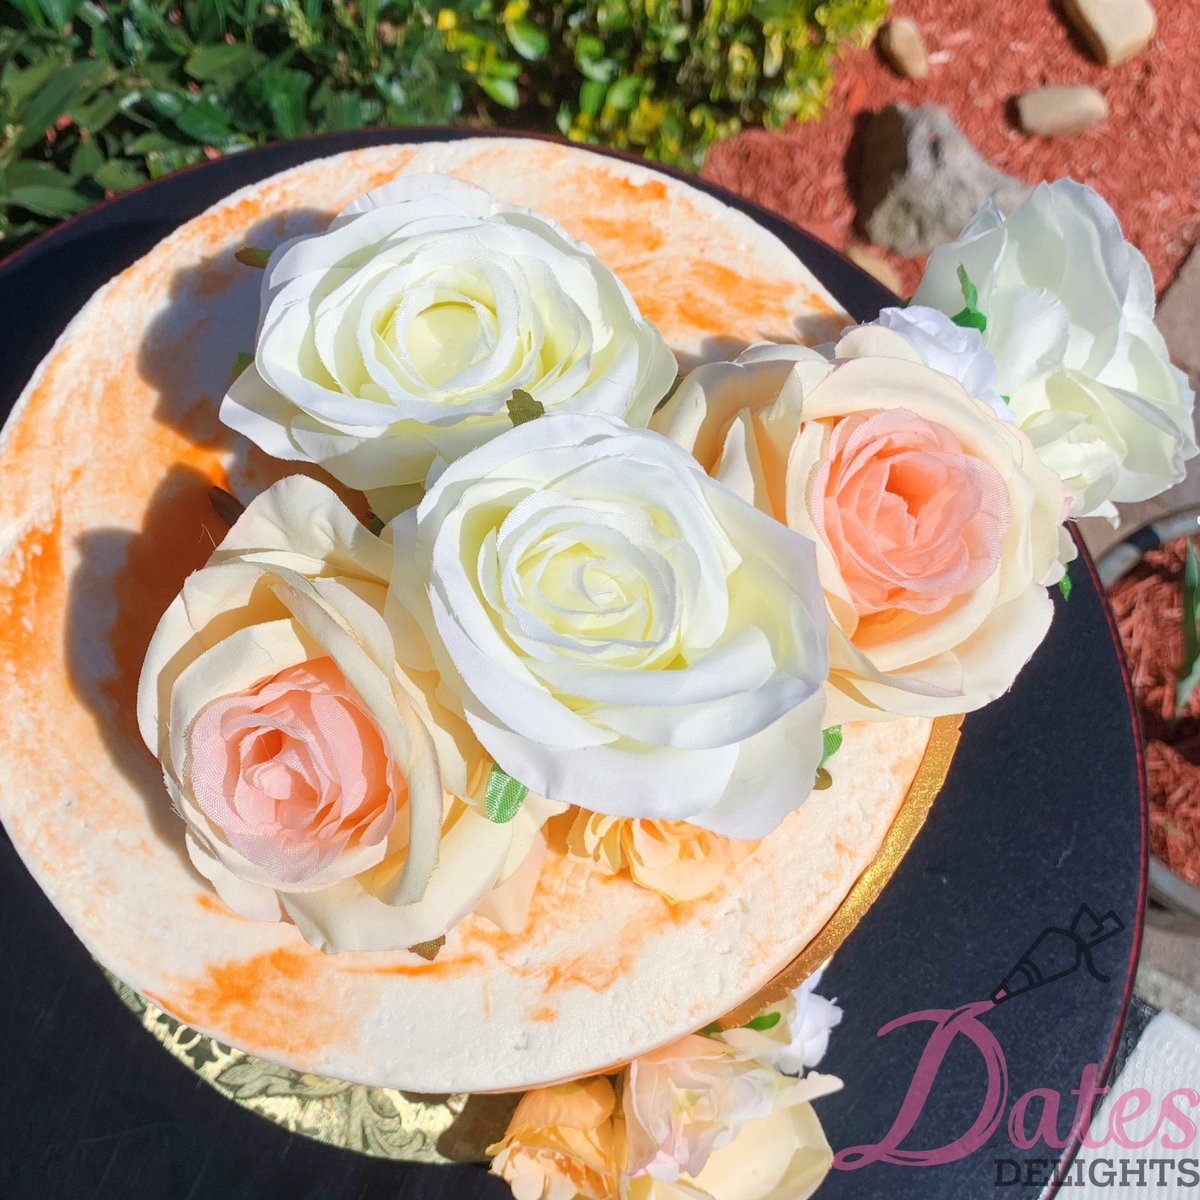 🤍🧡✨🌷🤍🧡✨🌷🤍🧡✨🌷 #datesdelights #dmvcakes #cake #floralcake #gold #roses